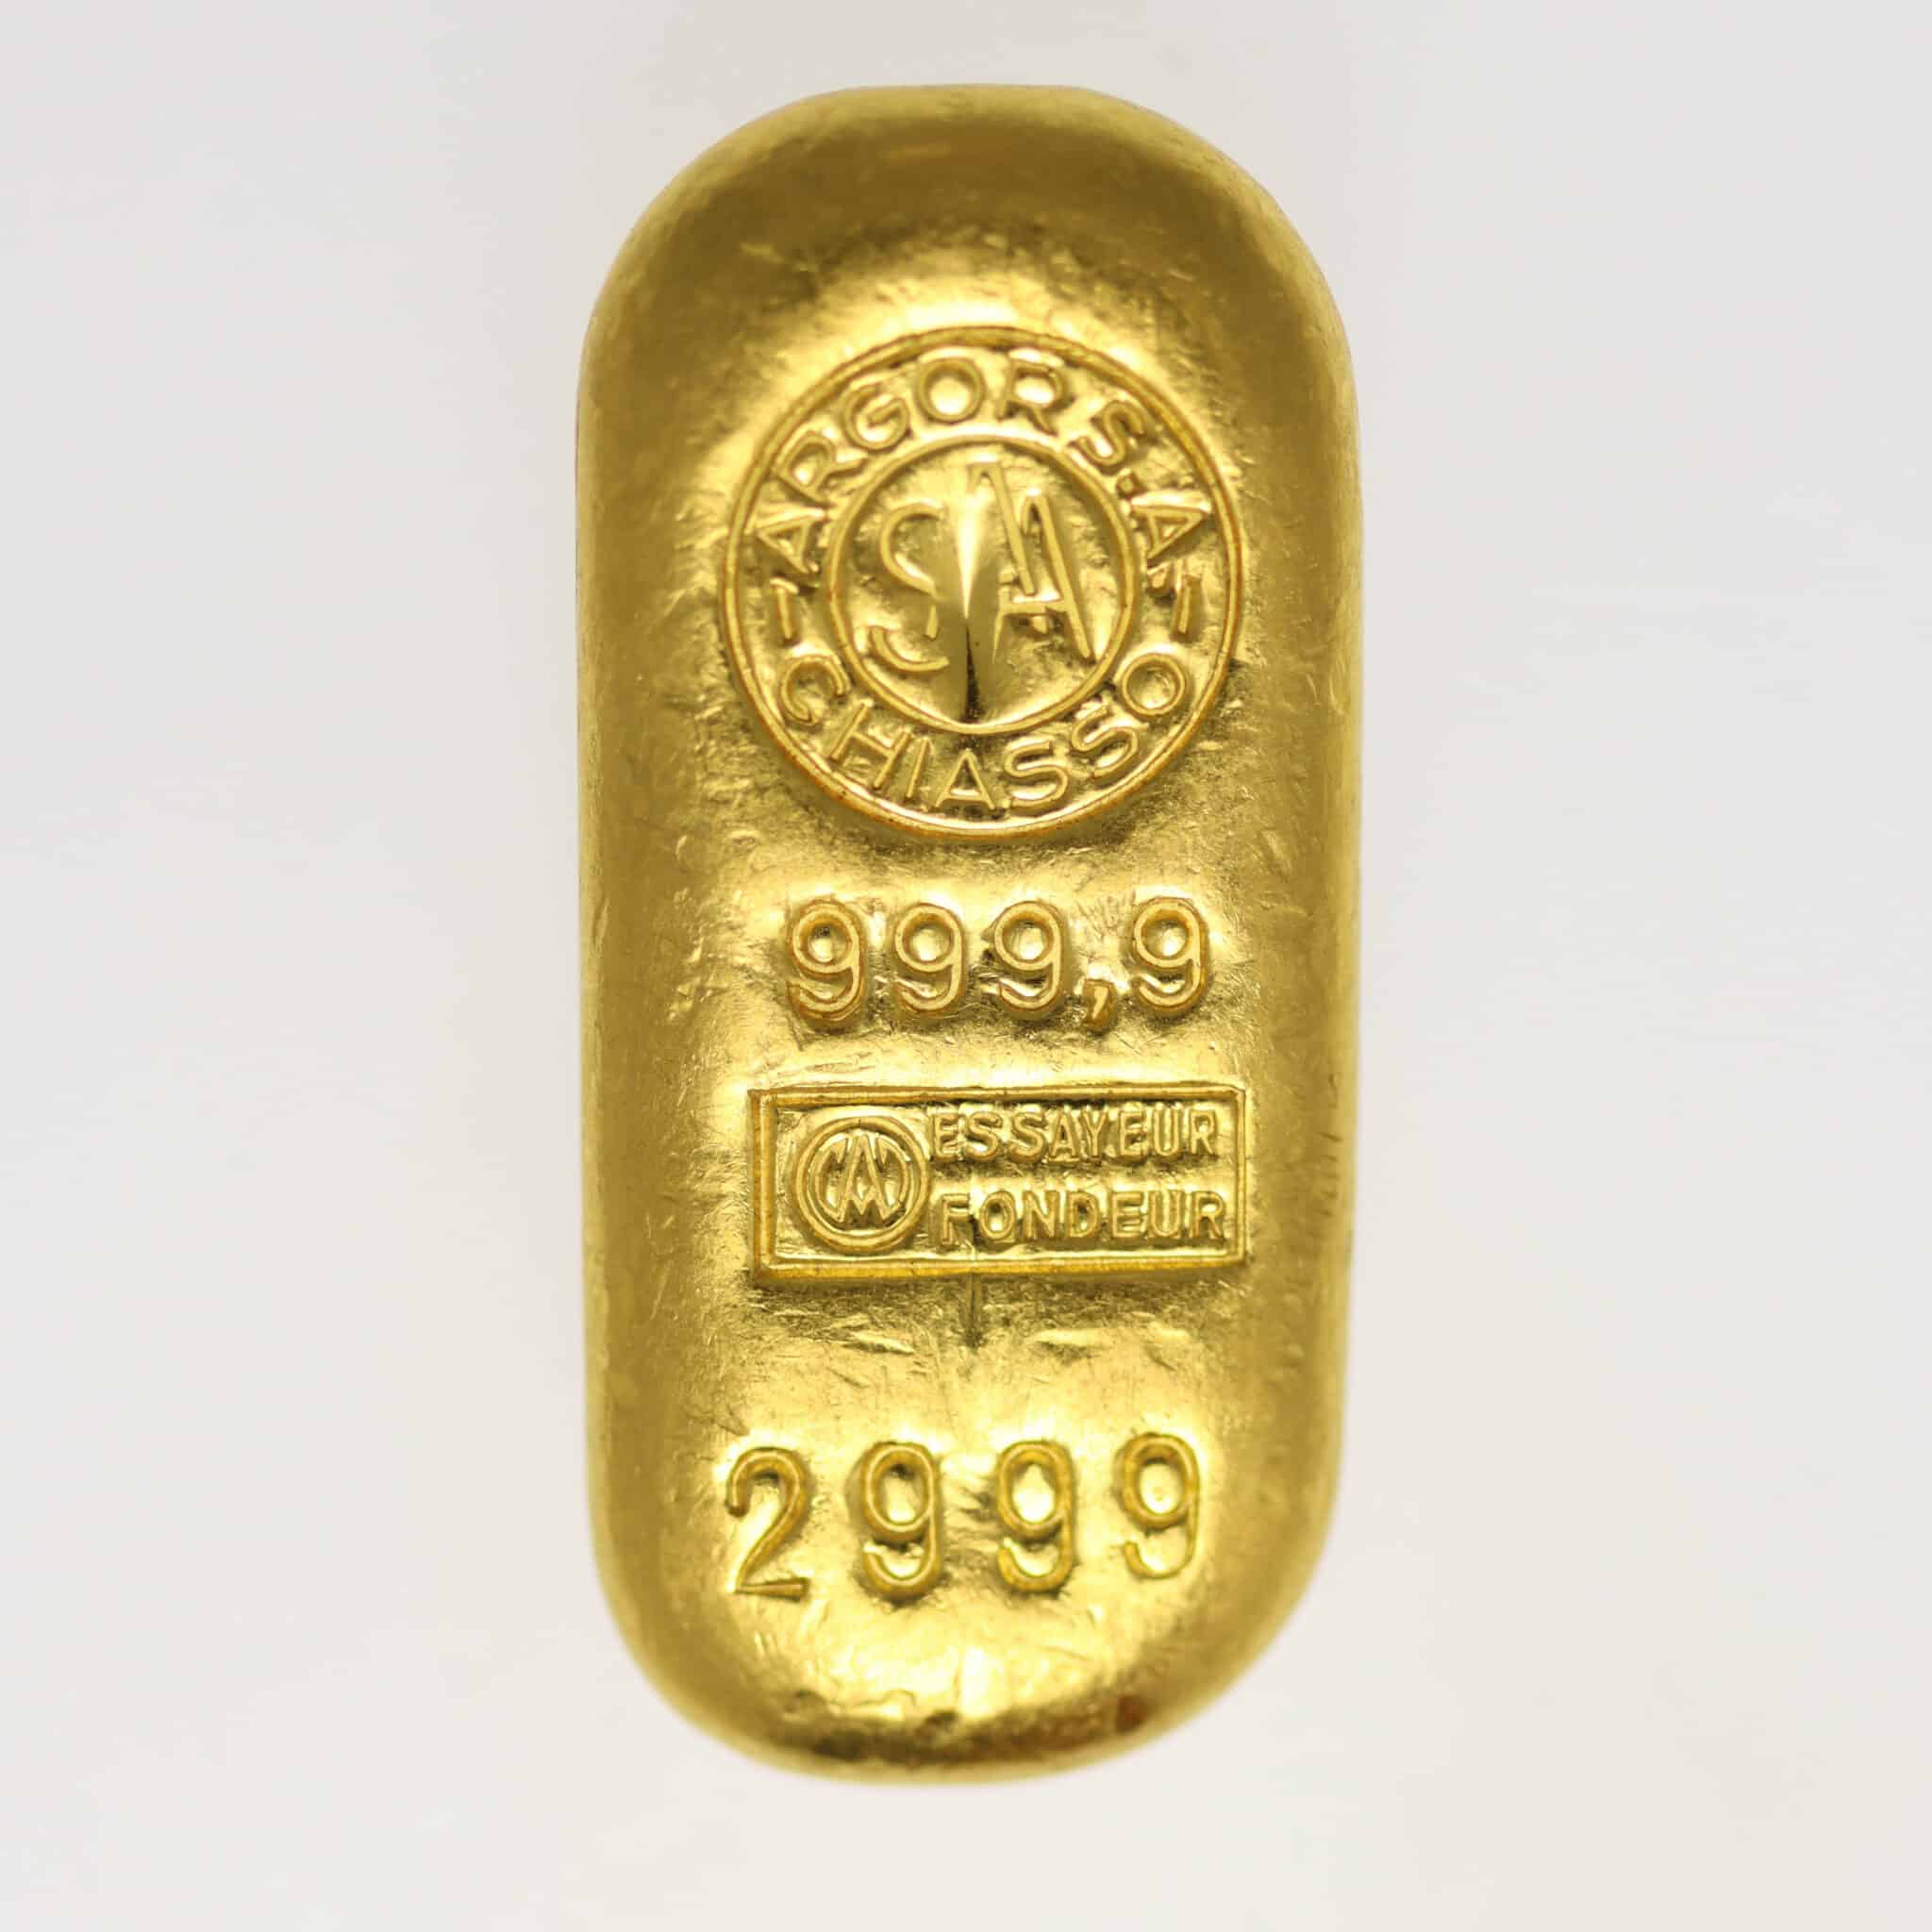 goldbarren - Goldbarren 50 Gramm Argor SA Chiasso